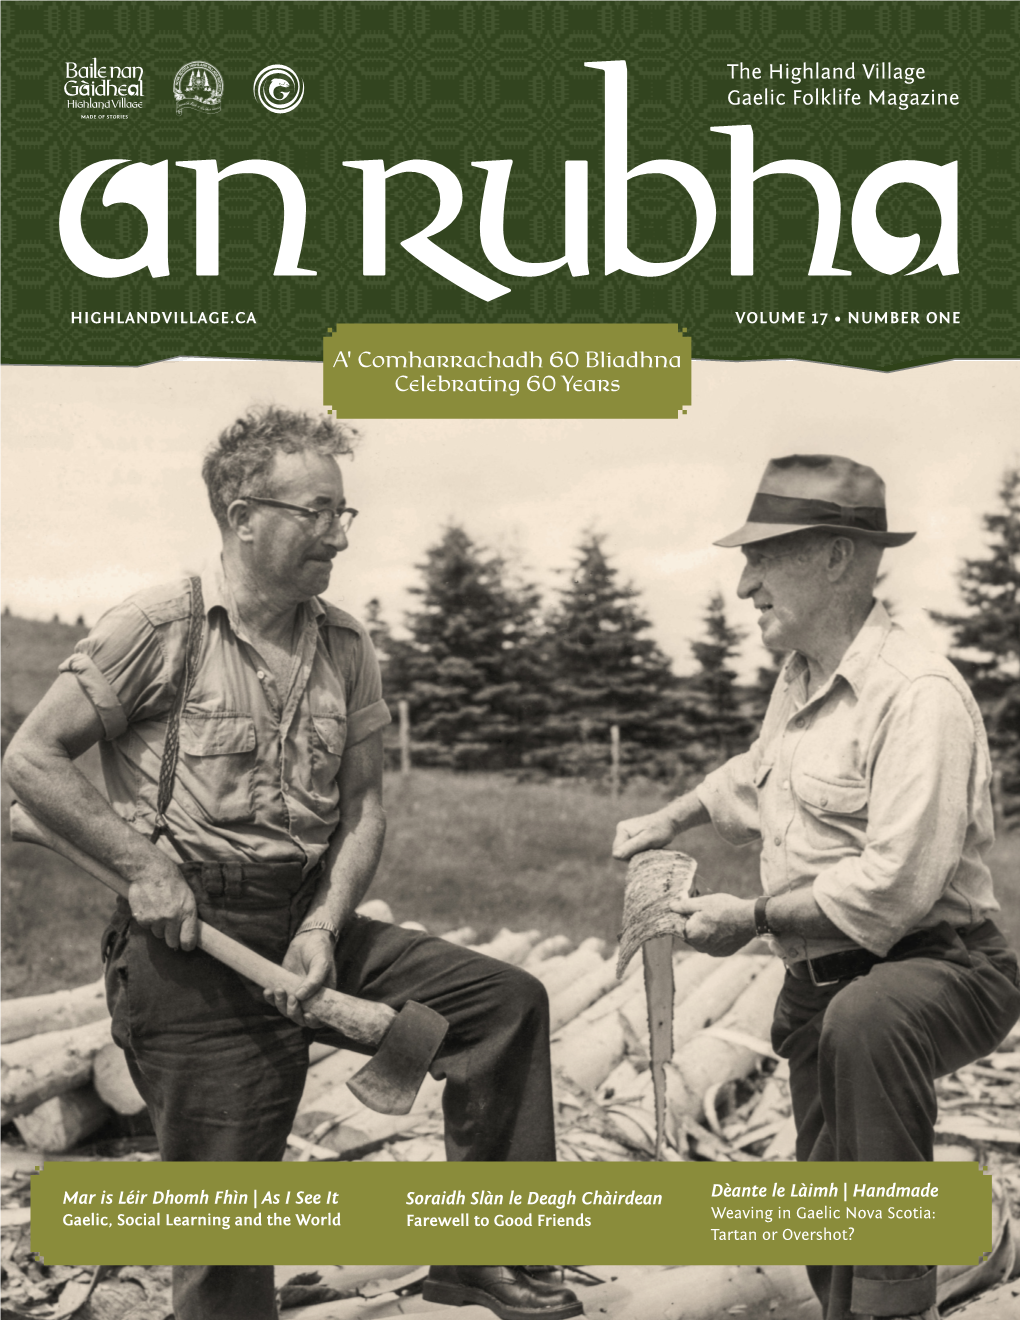 The Highland Village Gaelic Folklife Magazine